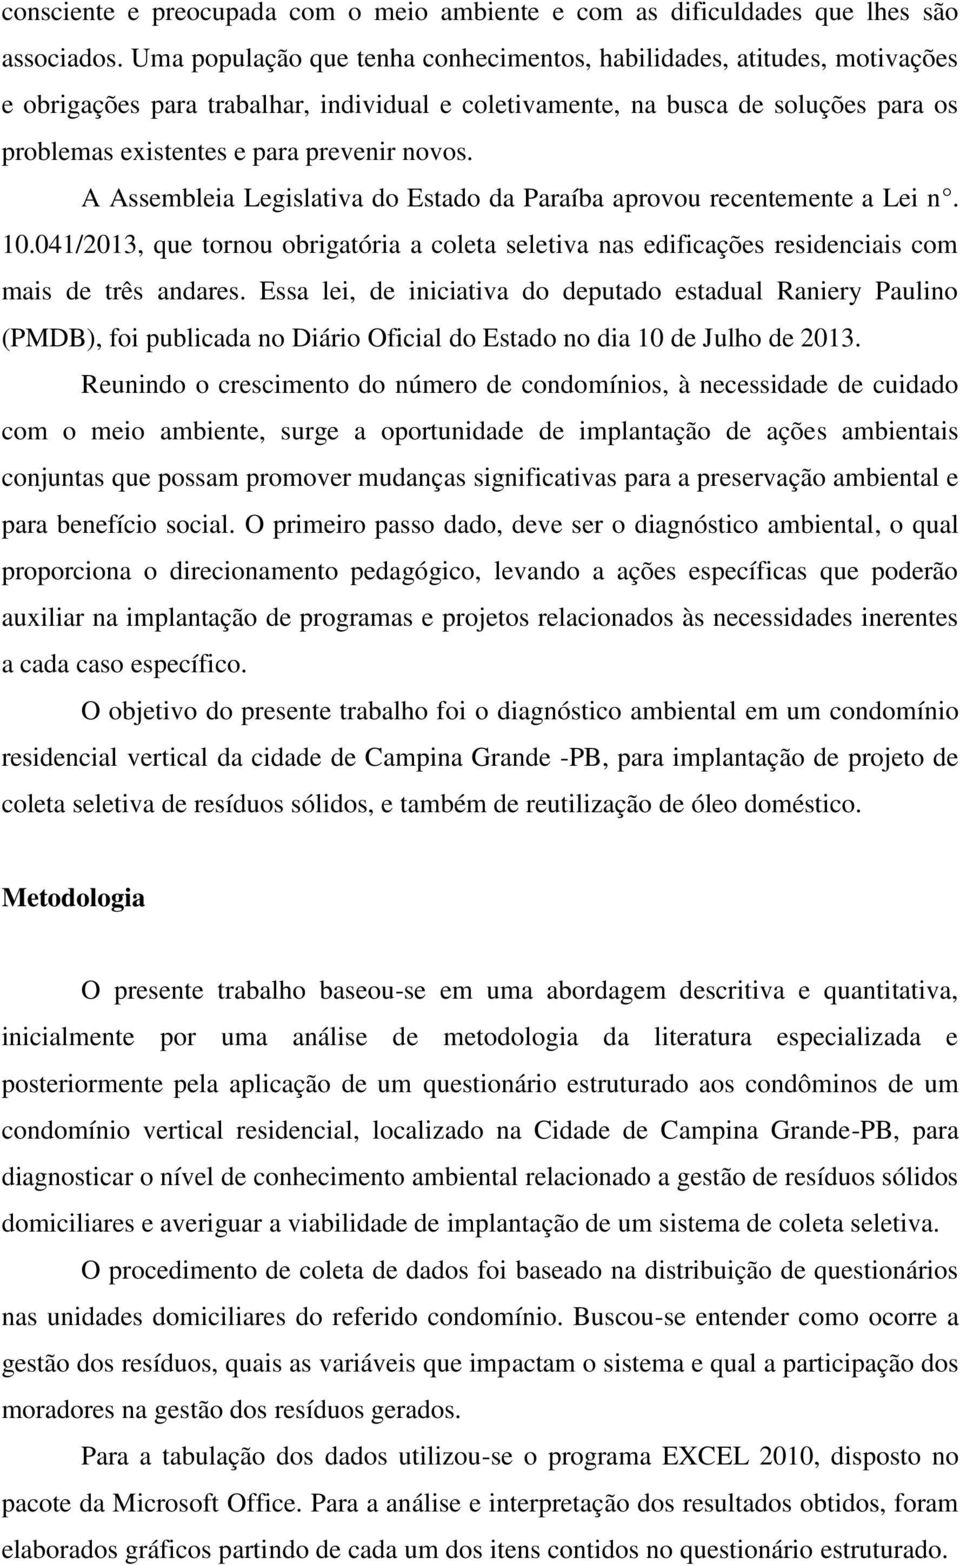 novos. A Assembleia Legislativa do Estado da Paraíba aprovou recentemente a Lei n. 10.041/2013, que tornou obrigatória a coleta seletiva nas edificações residenciais com mais de três andares.